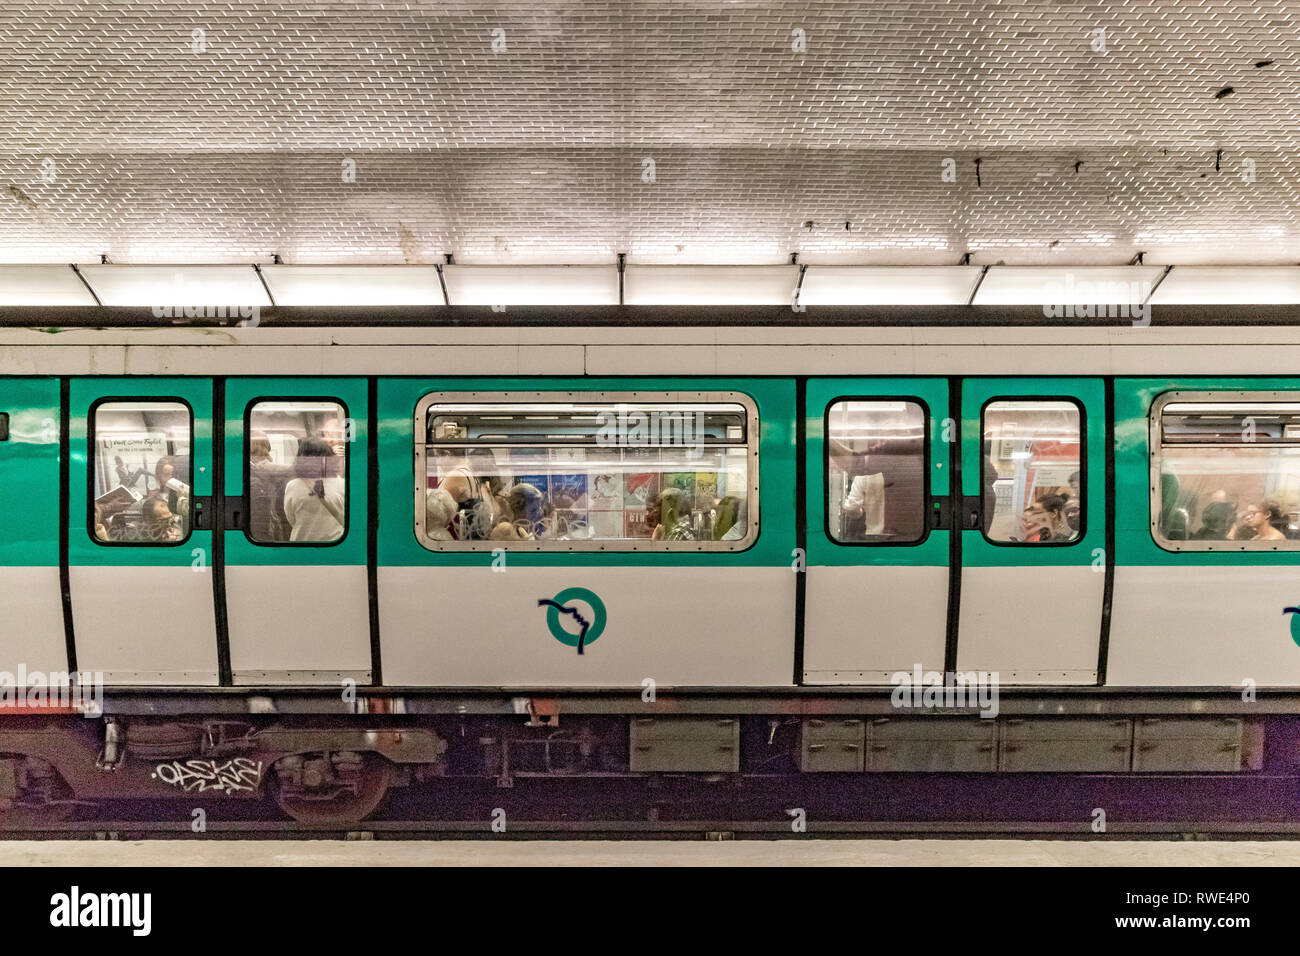 Personnes sur un métro de Paris à la station St Georges dans le 9ème arrondissement de Paris, France Banque D'Images